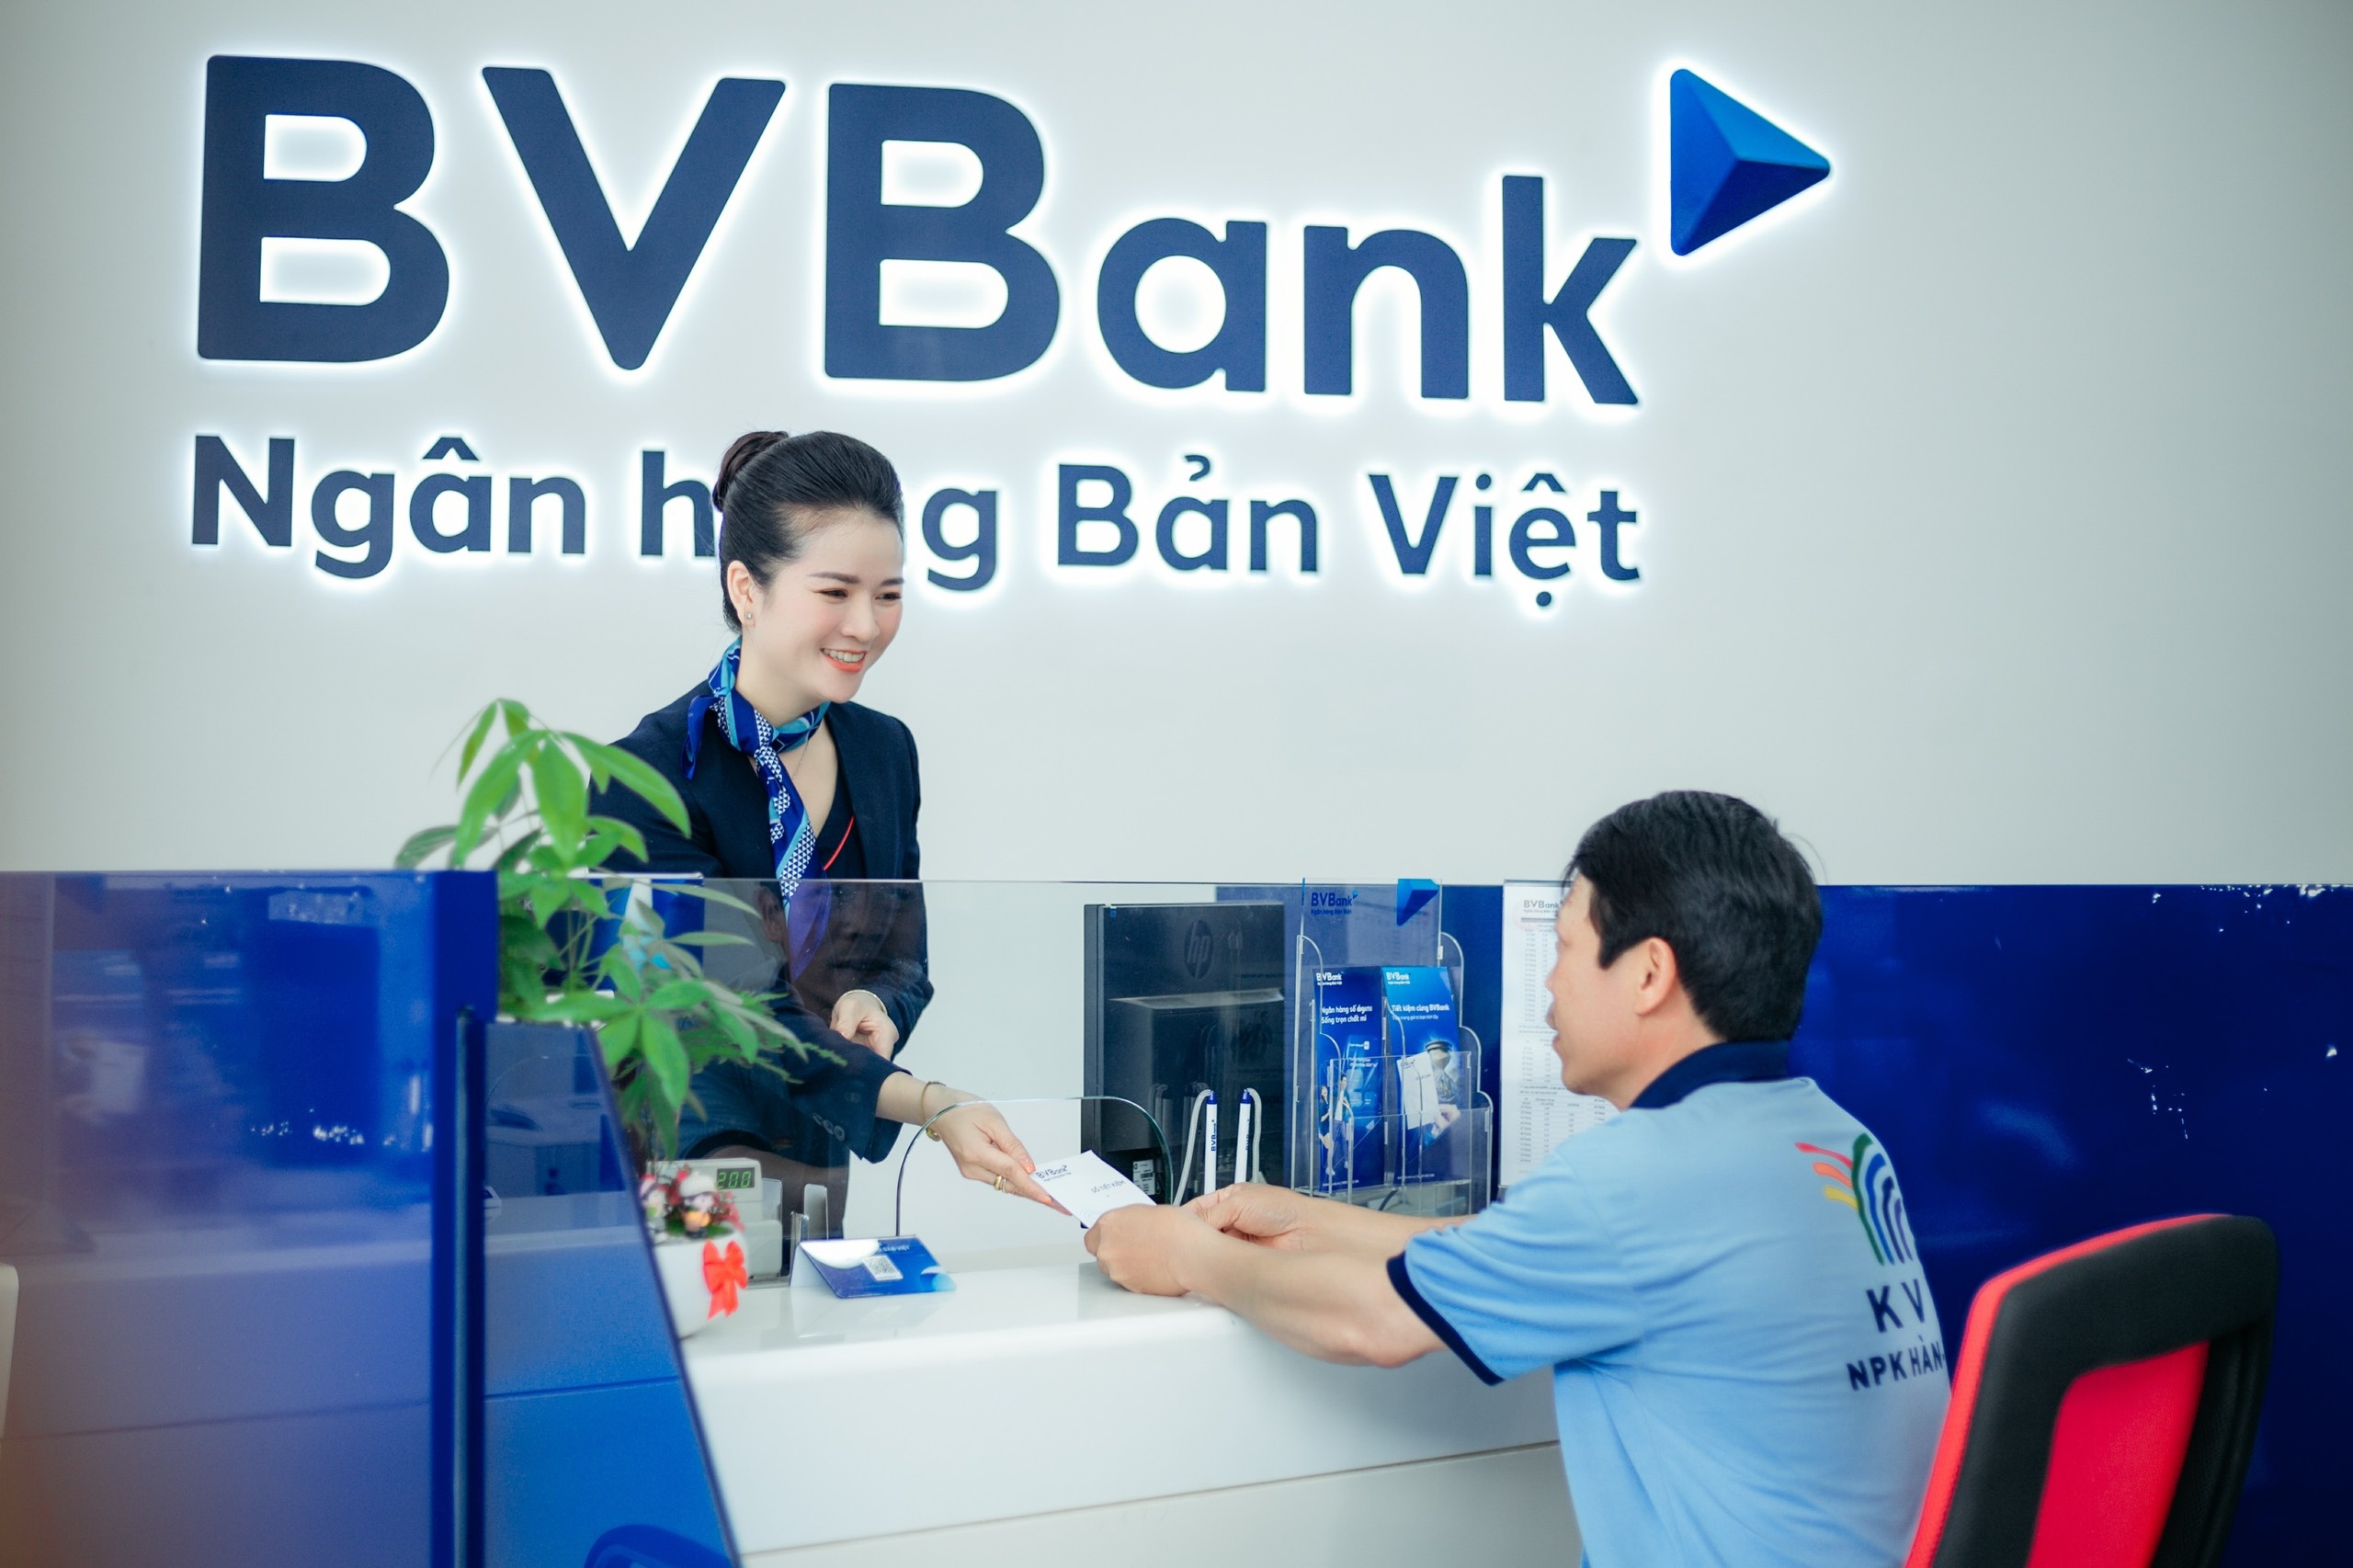 Một trong những yếu tố quan trọng giúp BVBank báo lãi tăng trưởng là nhờ Ngân hàng tích cực trong việc kiểm soát chi phí.